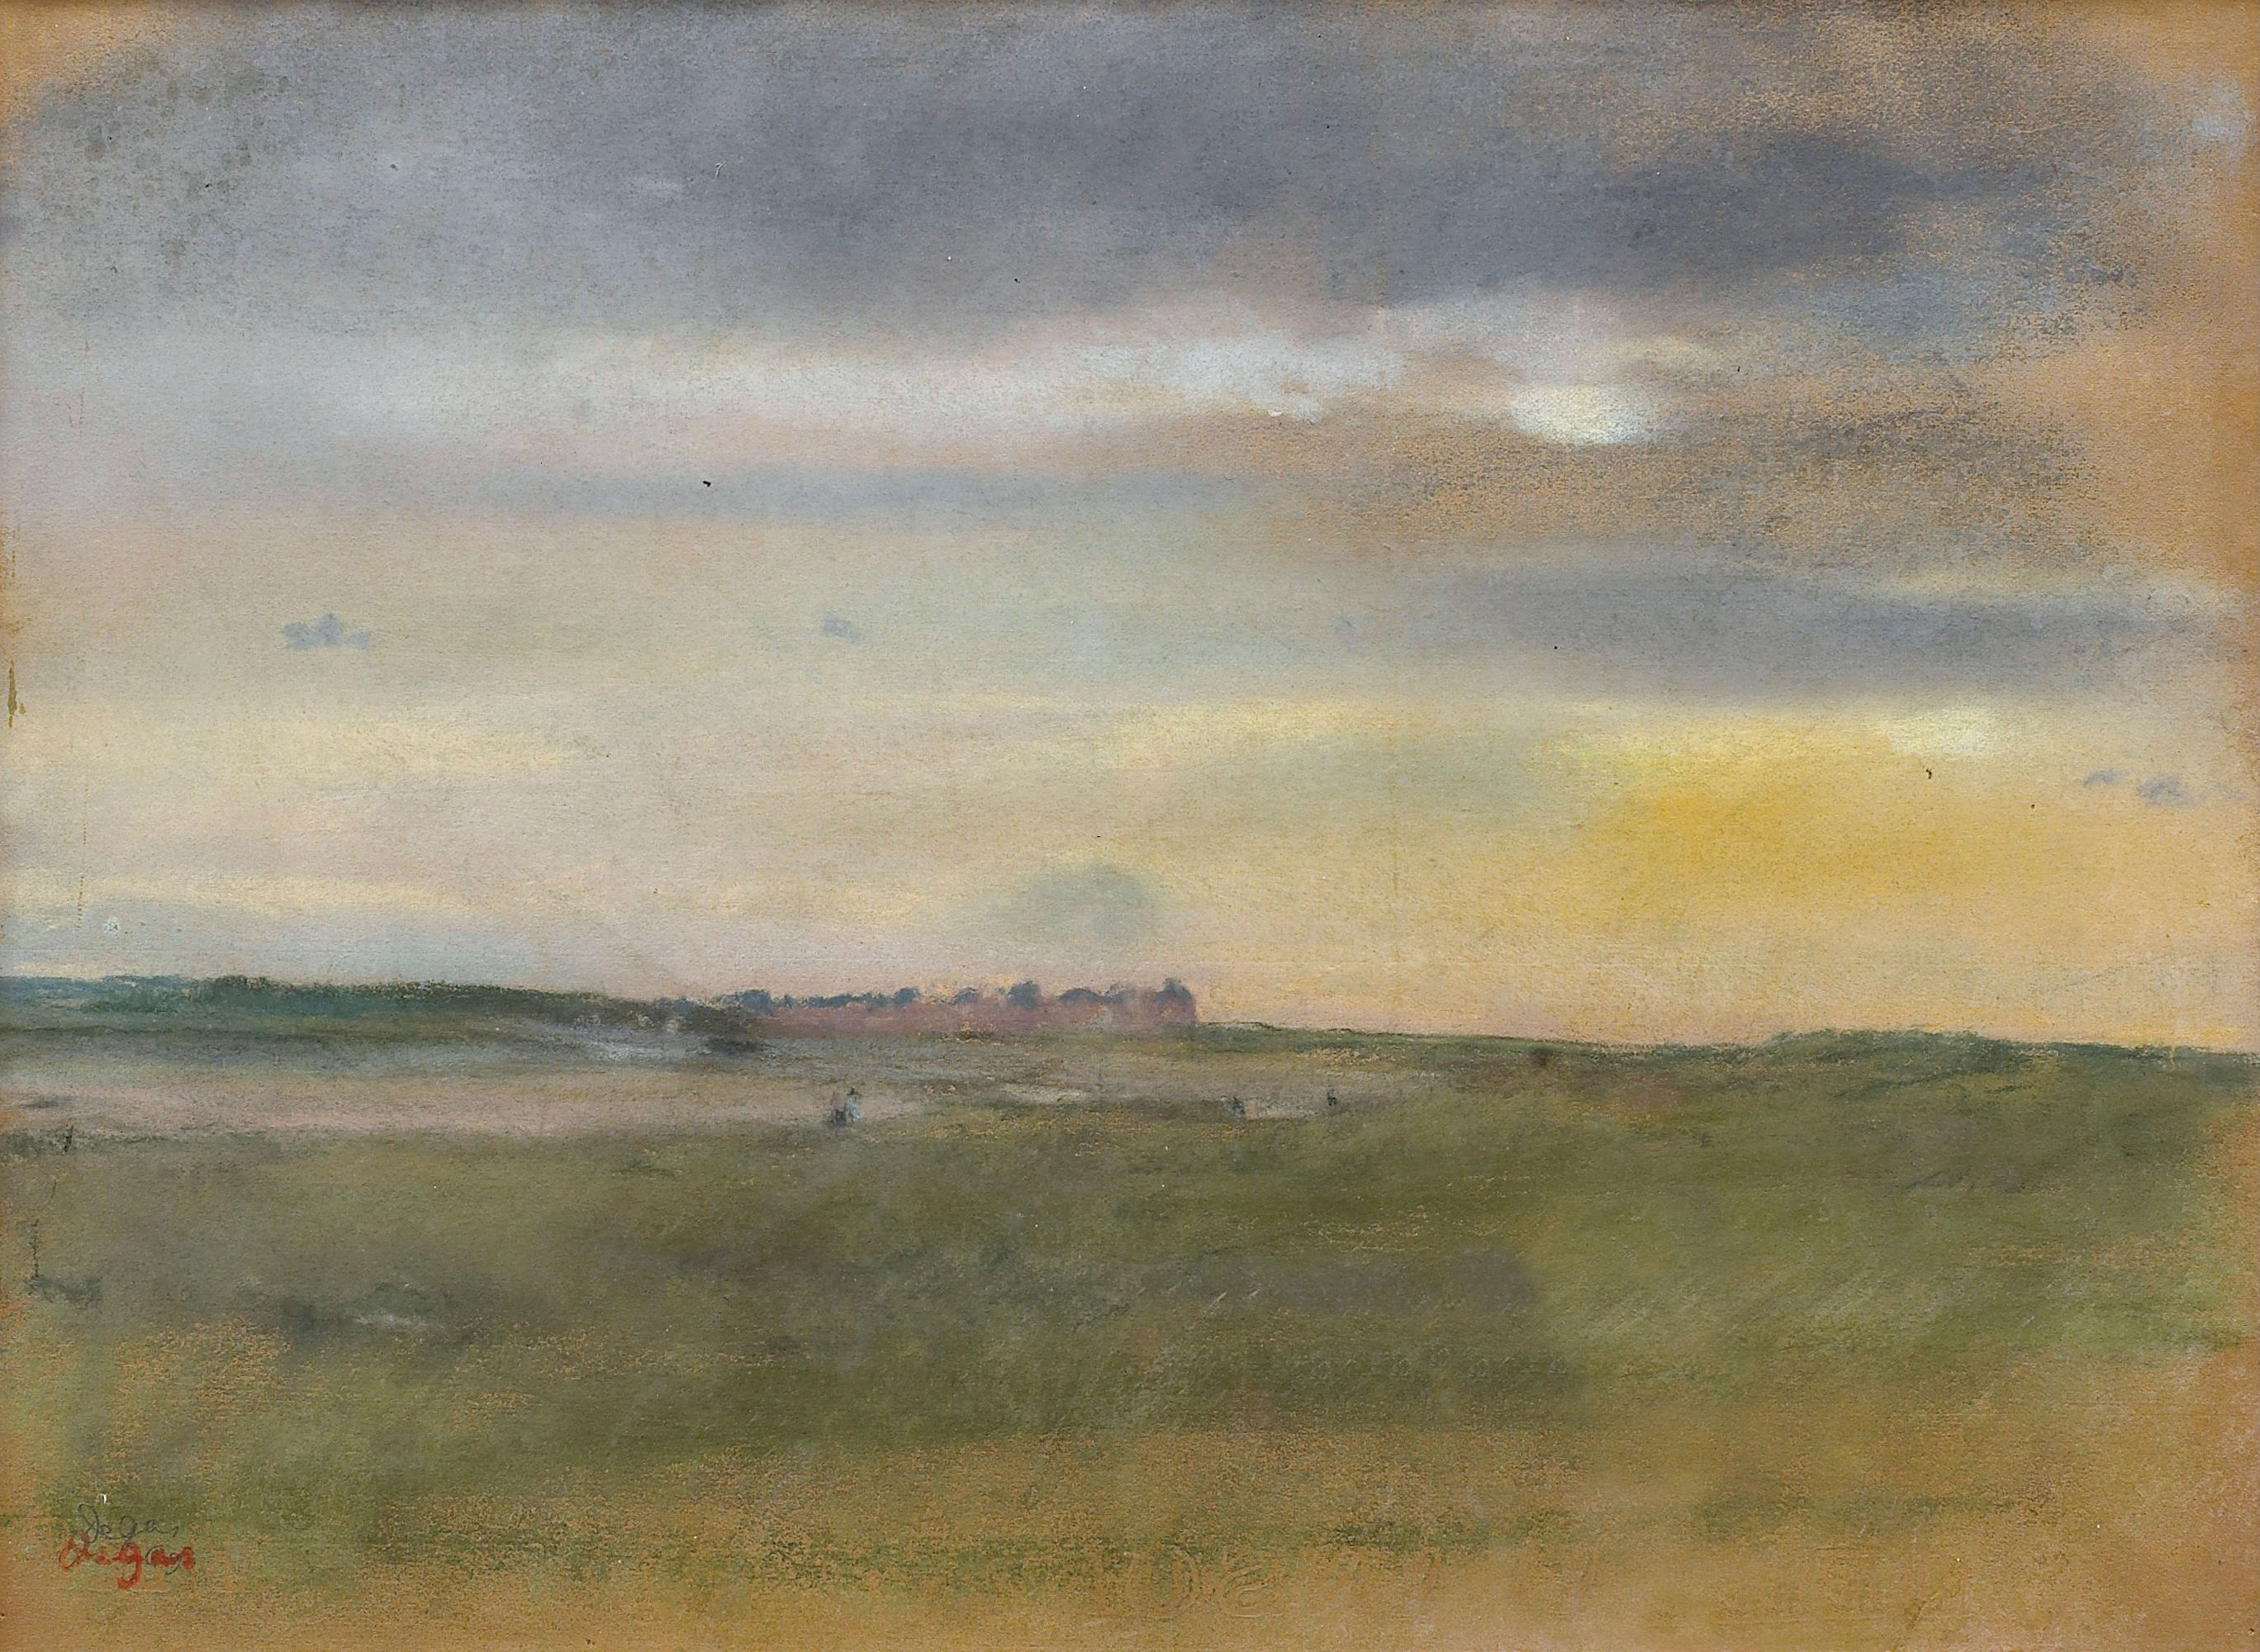 Эдгар Дега. "Пейзаж на закате". 1869.